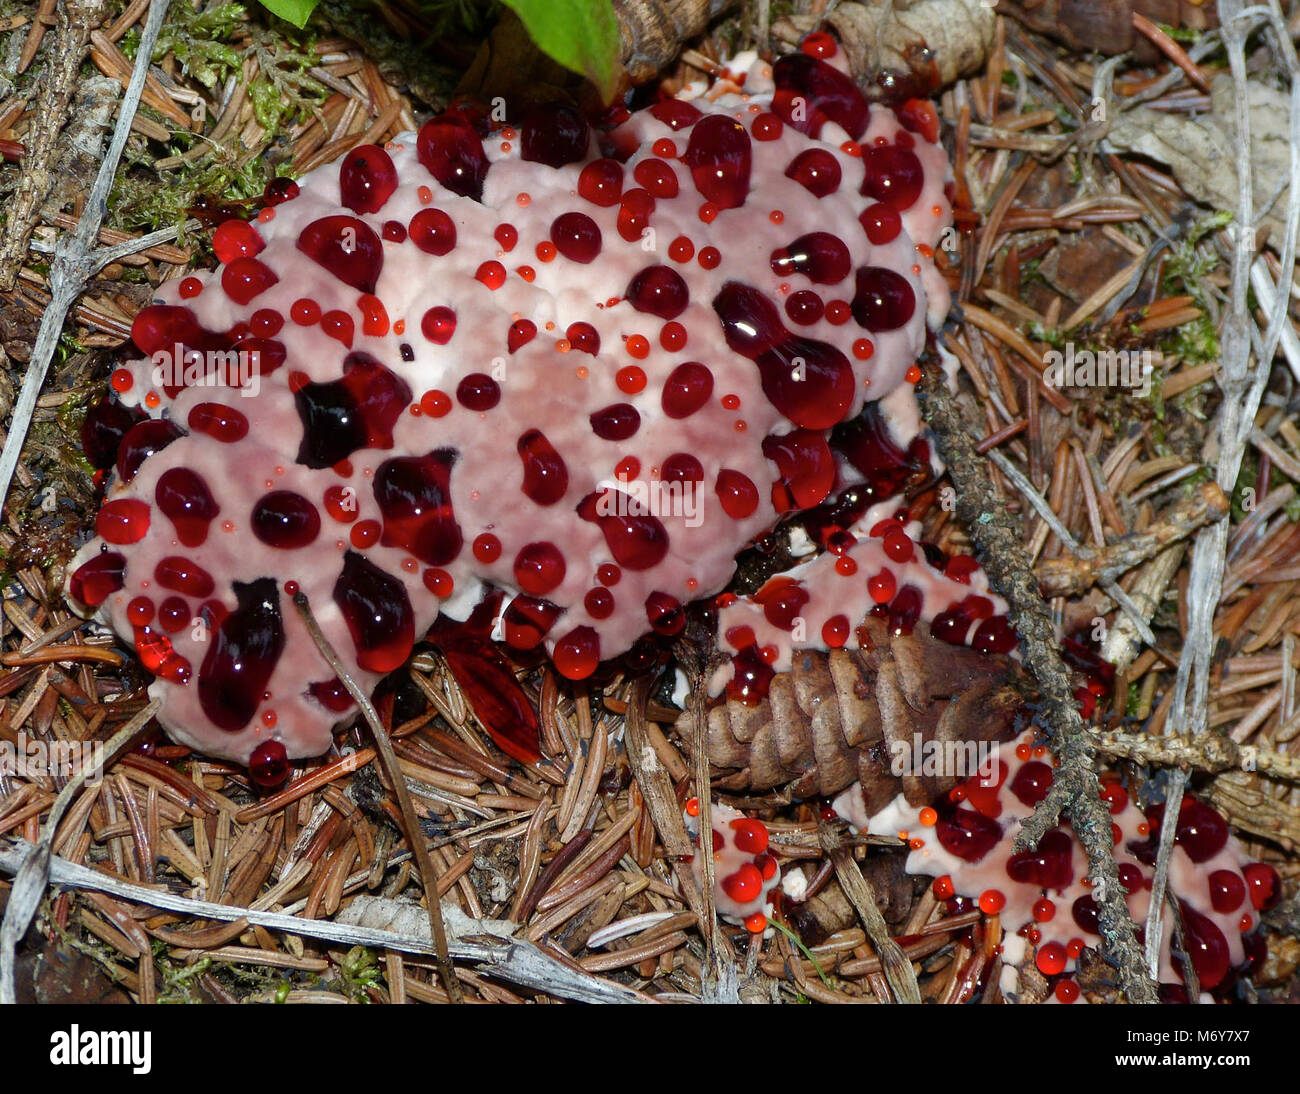 Dente di spurgo Fungo (Hydnellum peckii) . Il dente di spurgo fungo, nonostante il suo nome sconcertante, non è effettivamente in grado di sanguinamento, ma semplicemente secerne un rosso-liquido colorato, particolarmente in condizioni di umidità. Foto Stock